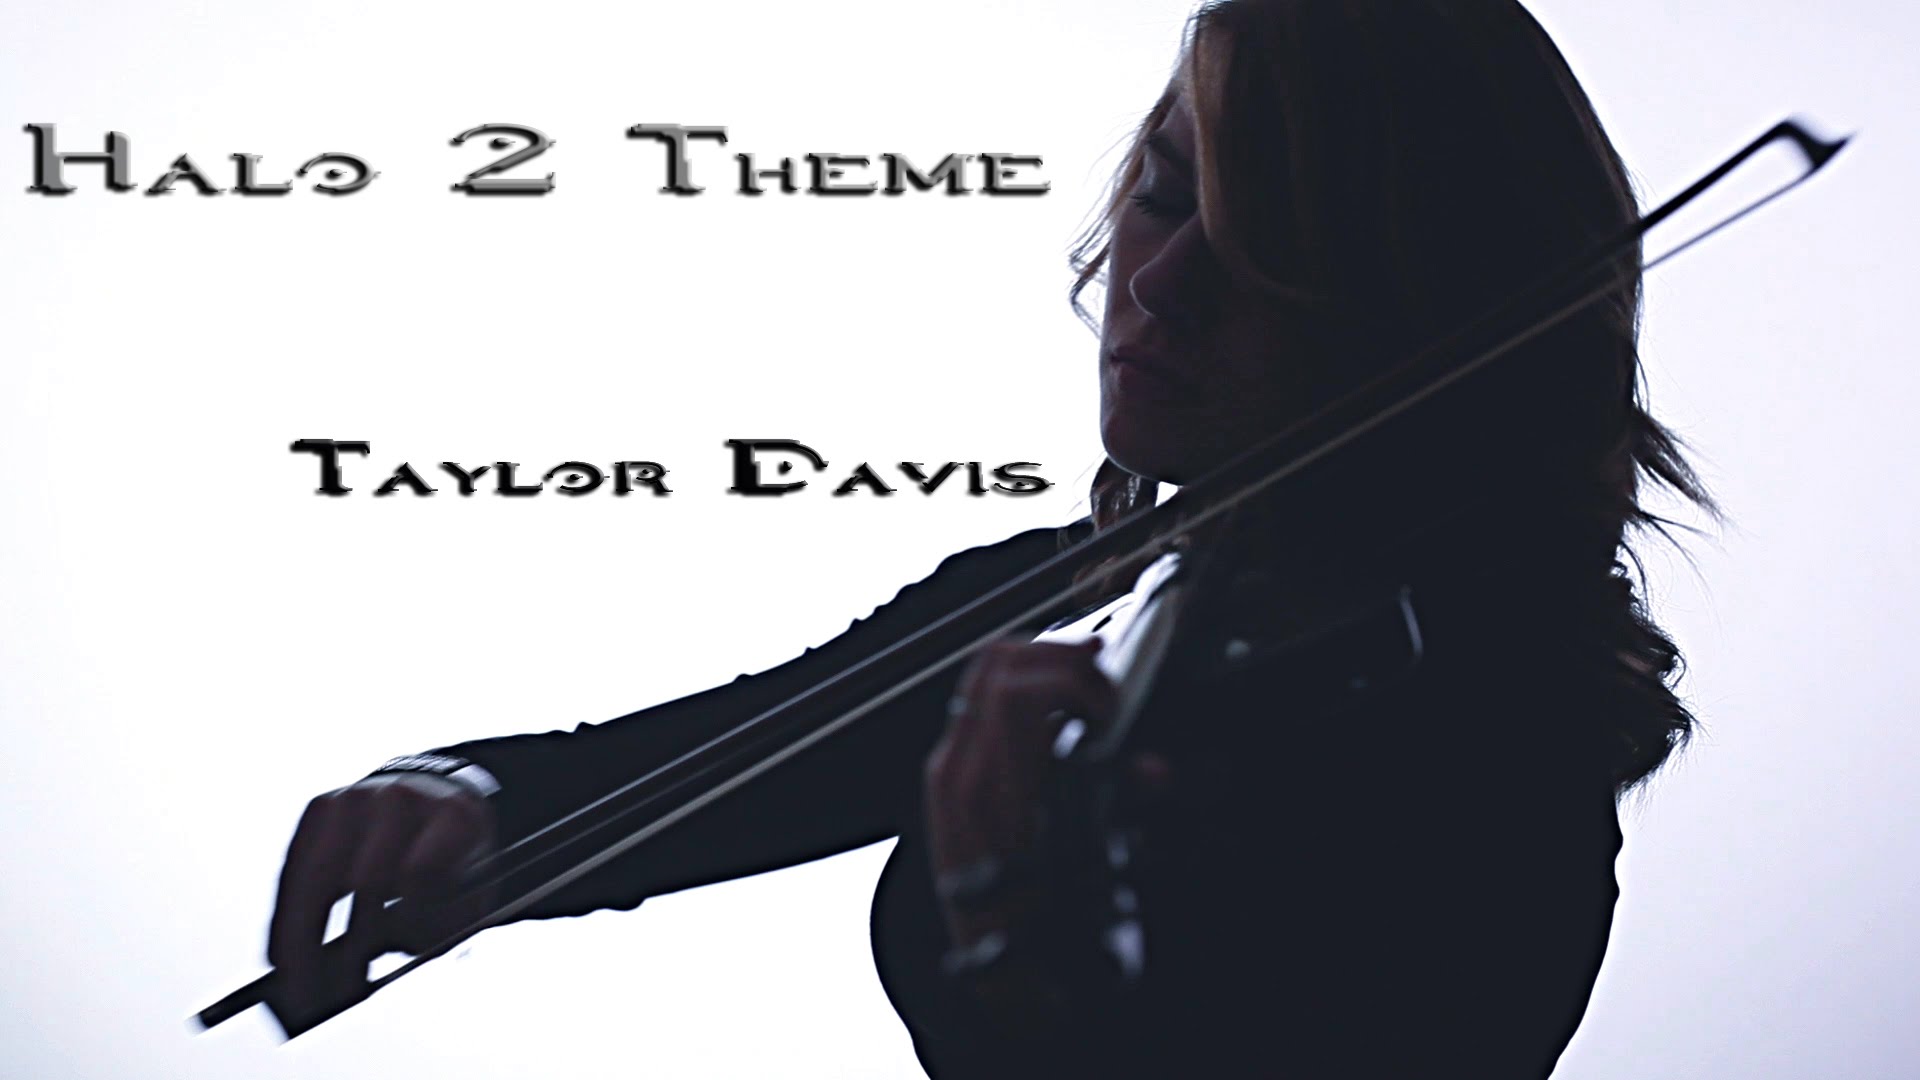 Halo 2 Theme cover por Taylor Davis